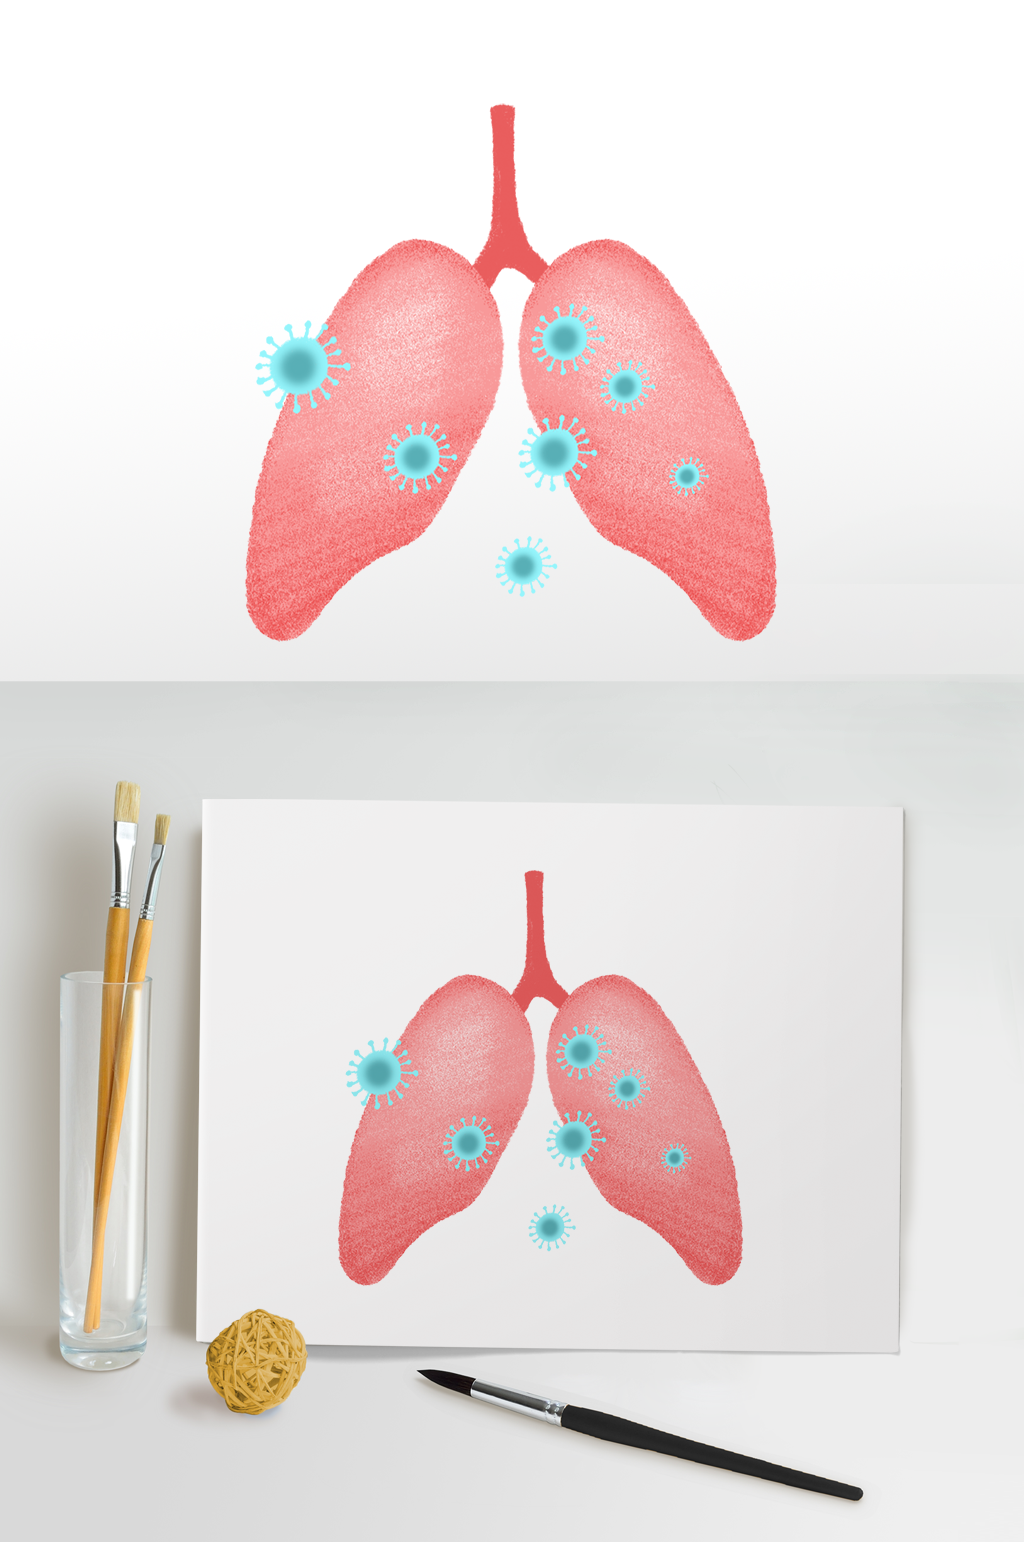 肺炎插画图片